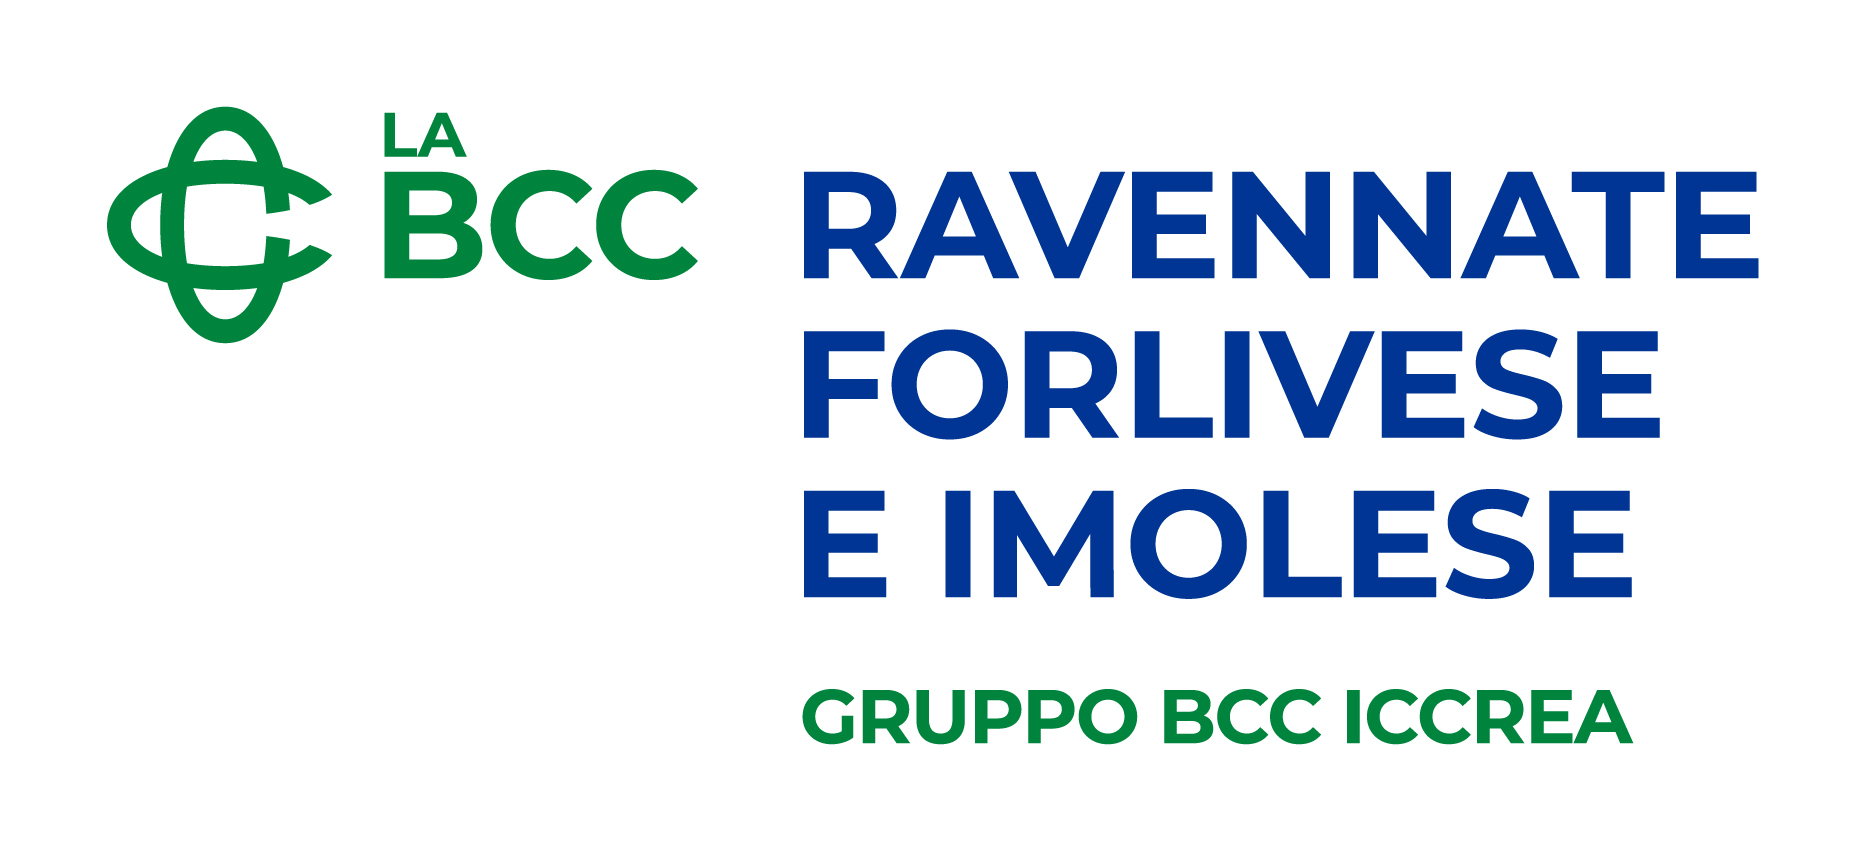 BCC_RAVENNATE FORLIVESE E IMOLESE